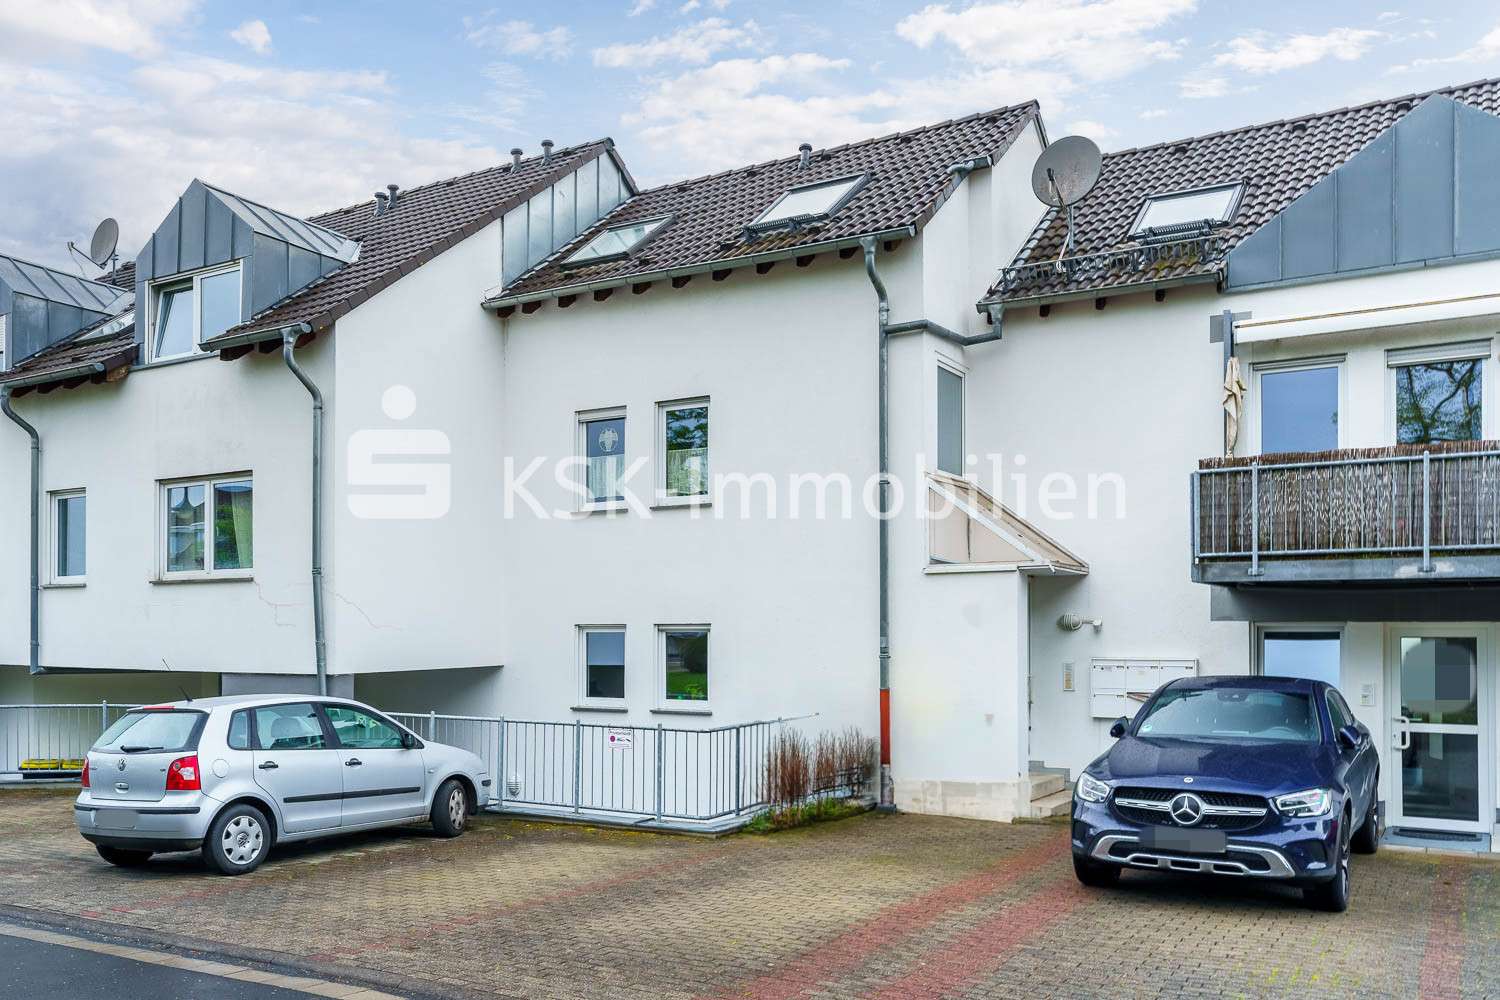 125237 Außenansicht - Souterrain-Wohnung in 53604 Bad Honnef mit 67m² kaufen